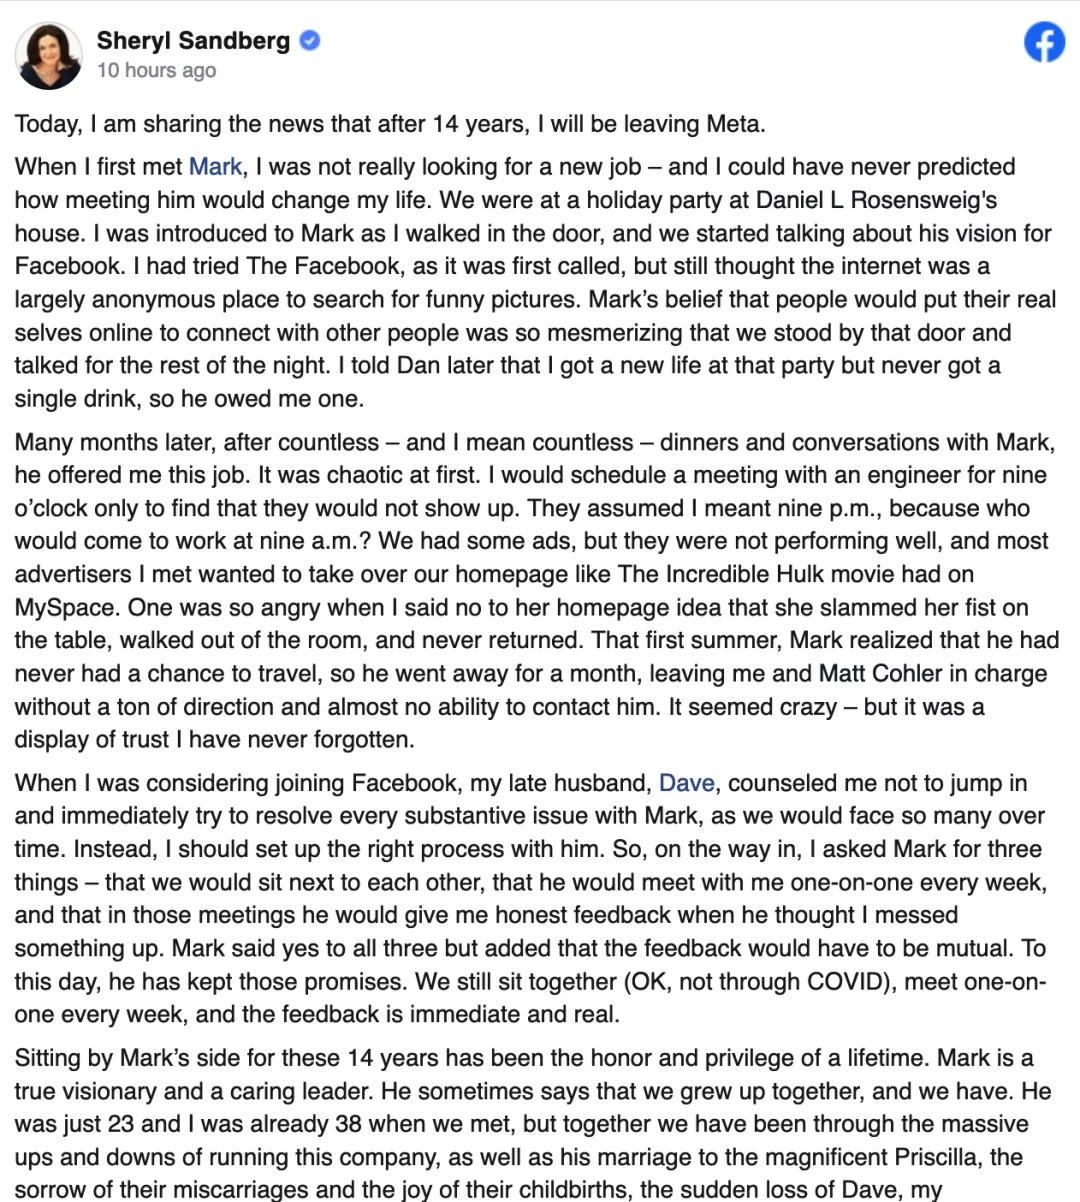 Meta 首席运营官 Sheryl Sandberg 宣布辞职